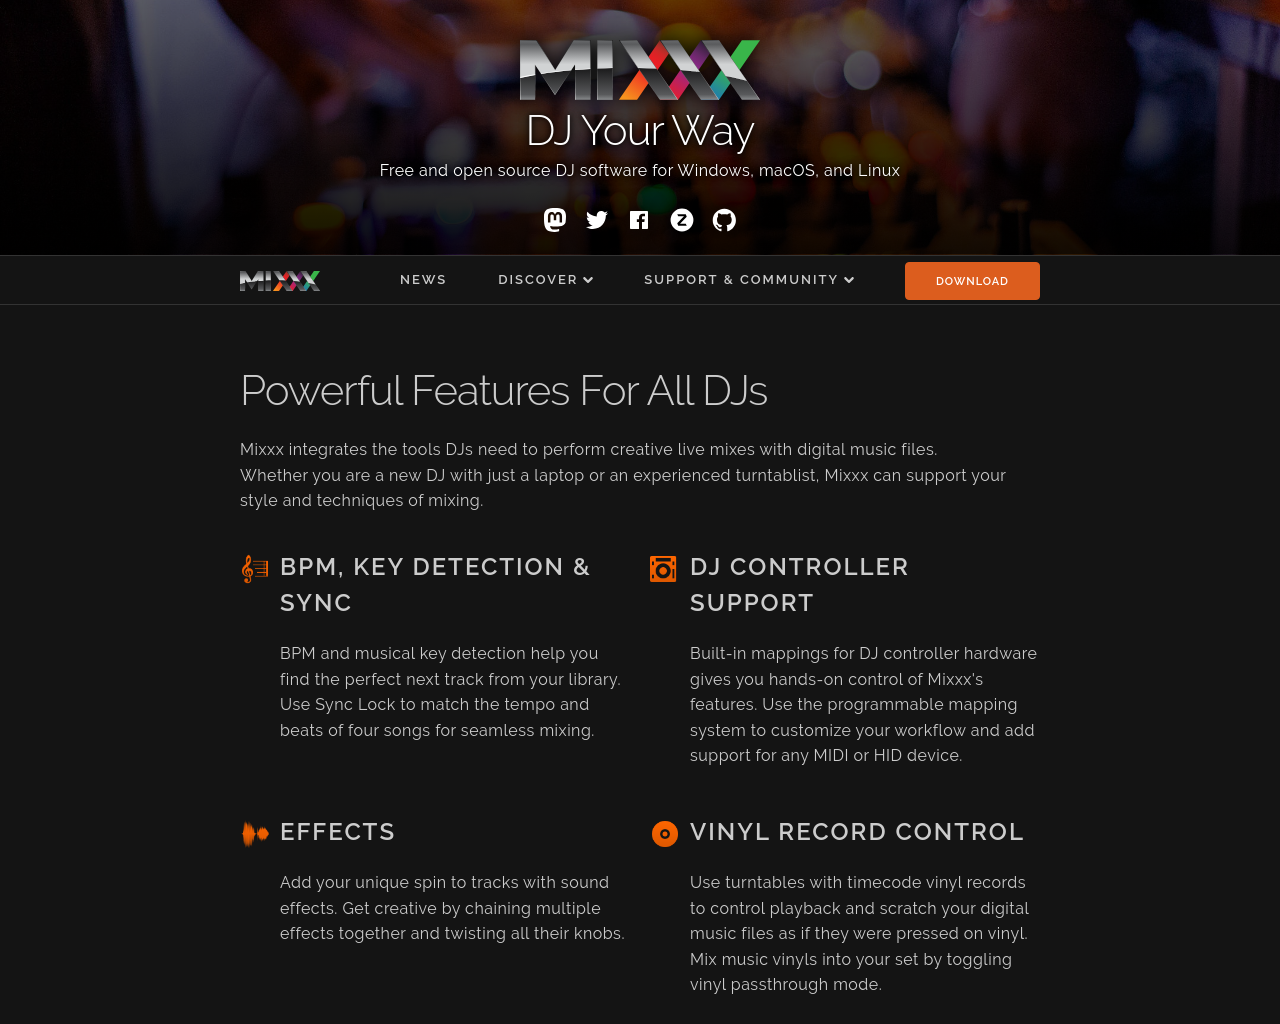 mixxx.org